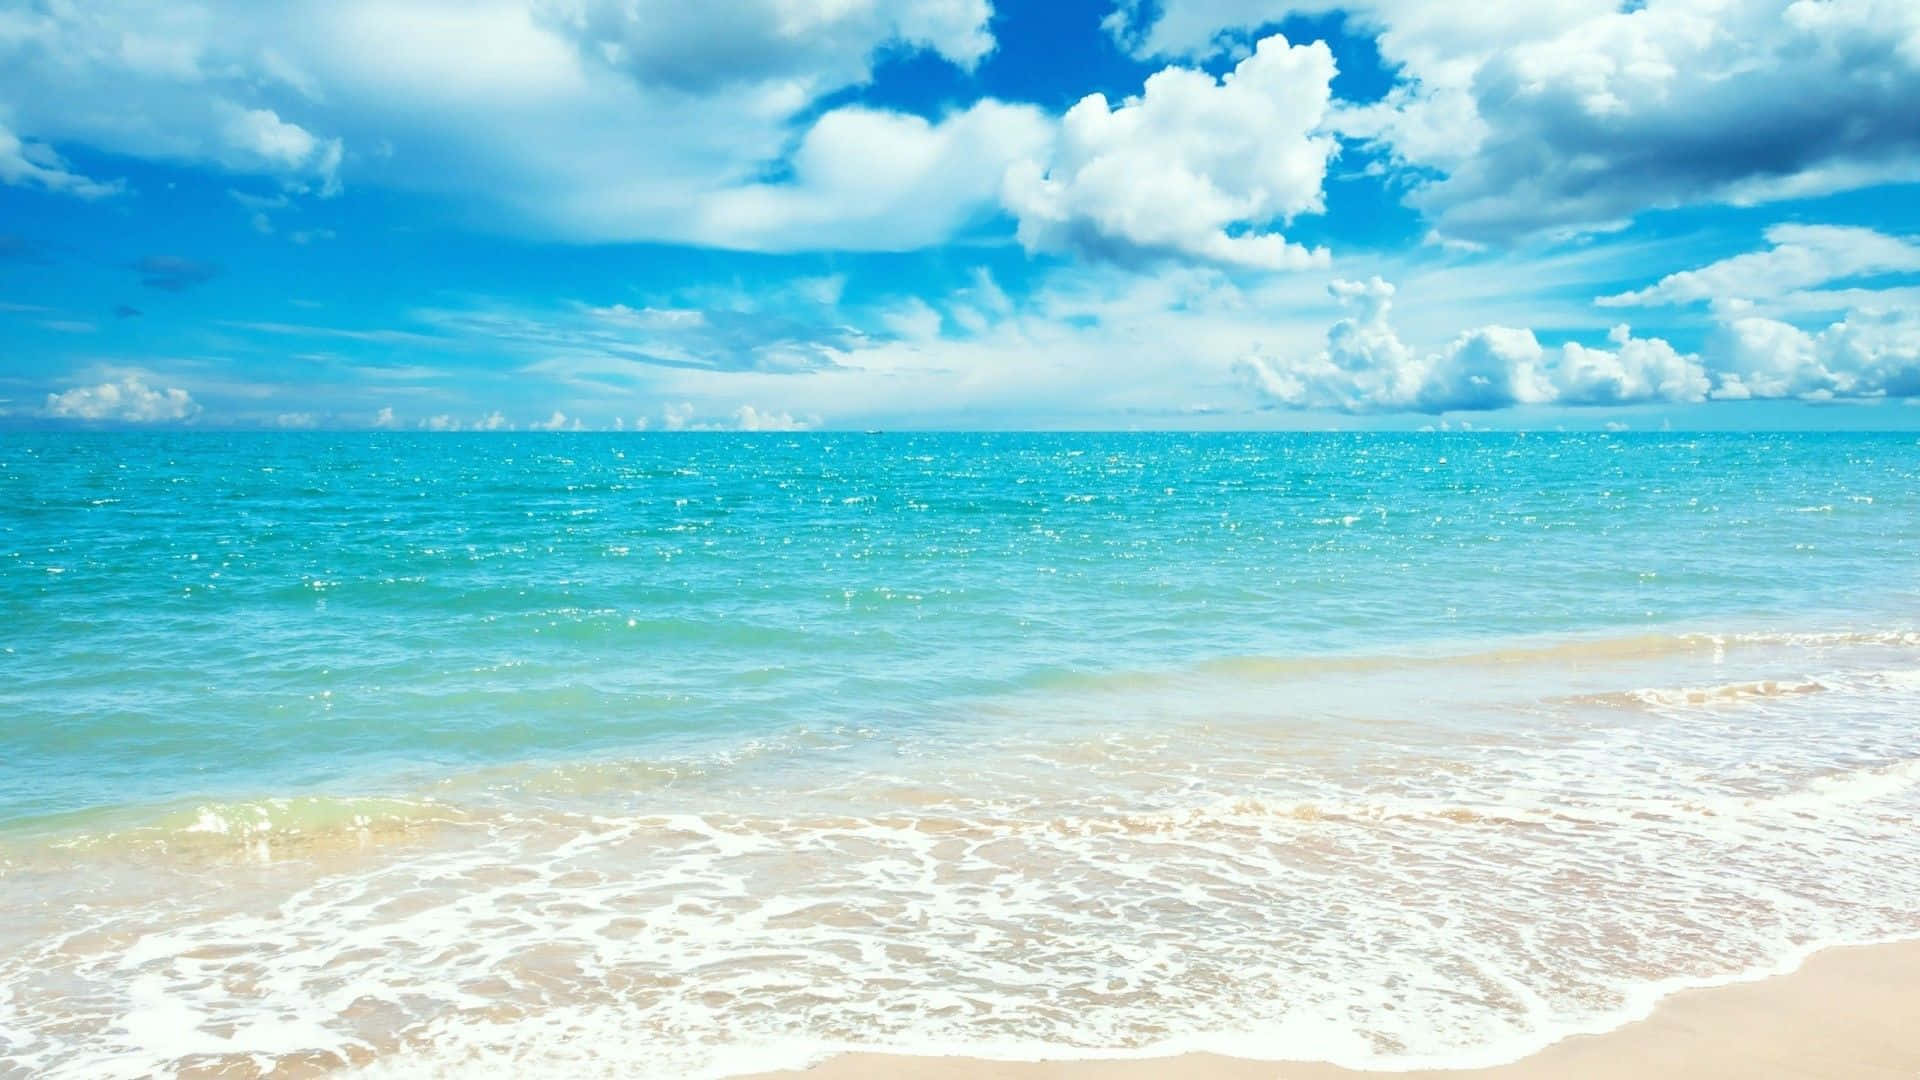 Nếu bạn phải dành nhiều thời gian trên máy tính, hãy để bức ảnh hình nền biển mang đến cho bạn các khoảnh khắc thư giãn và tươi mới. Hình nền này sẽ khai trương trong tâm trí của bạn những kỷ niệm đẹp của kỳ nghỉ biển.